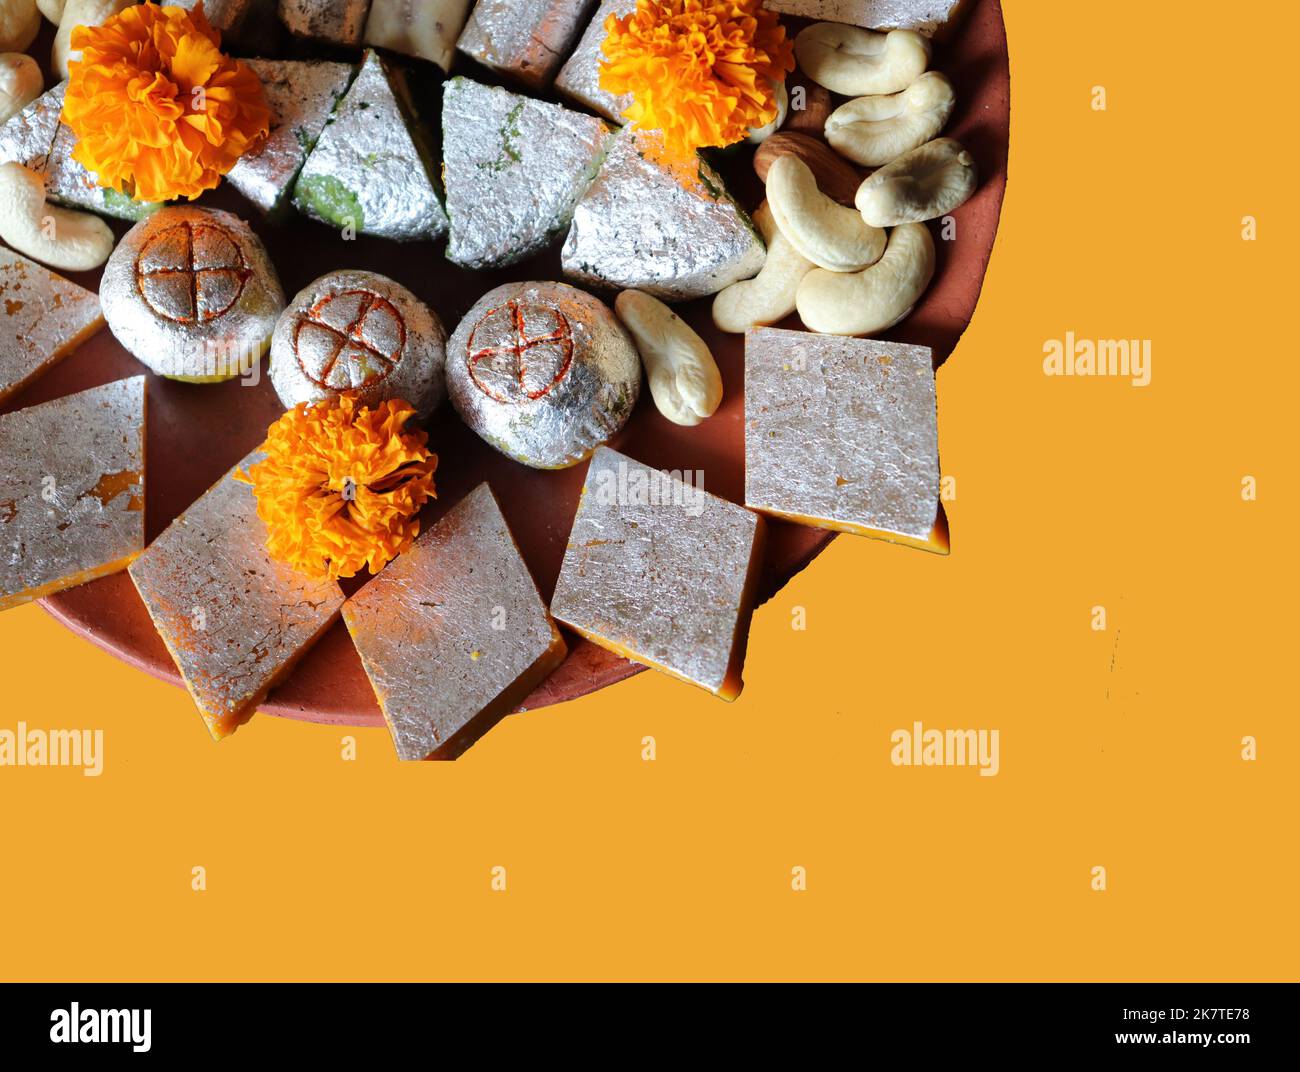 Dolci indiani assortiti / frutta secca / fiore di marigold in un piatto di terracotta / argilla su sfondo giallo / Diwali / Deepavali festival Foto Stock